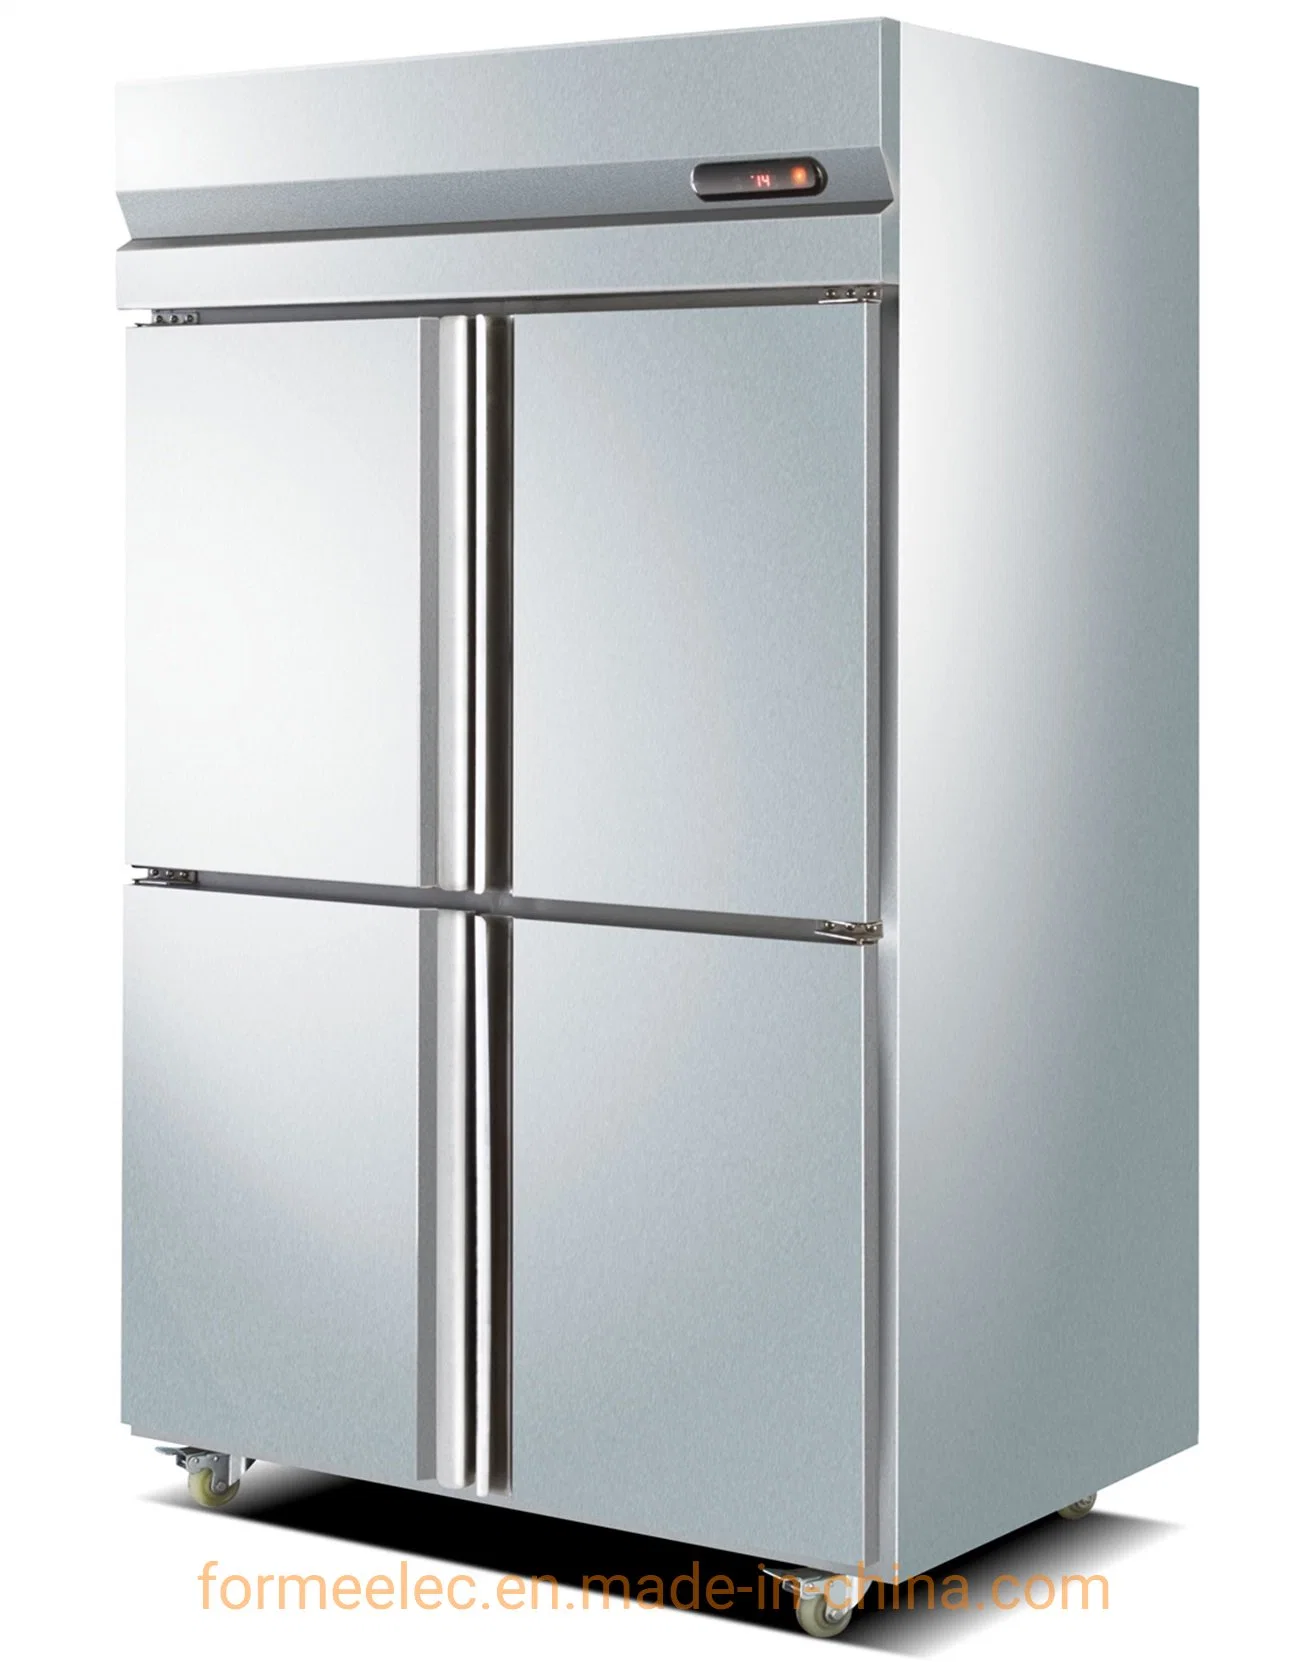 1000L коммерческих морозильник вертикальный кухне есть холодильник для охлаждения воздуха в морозильную камеру на кухне